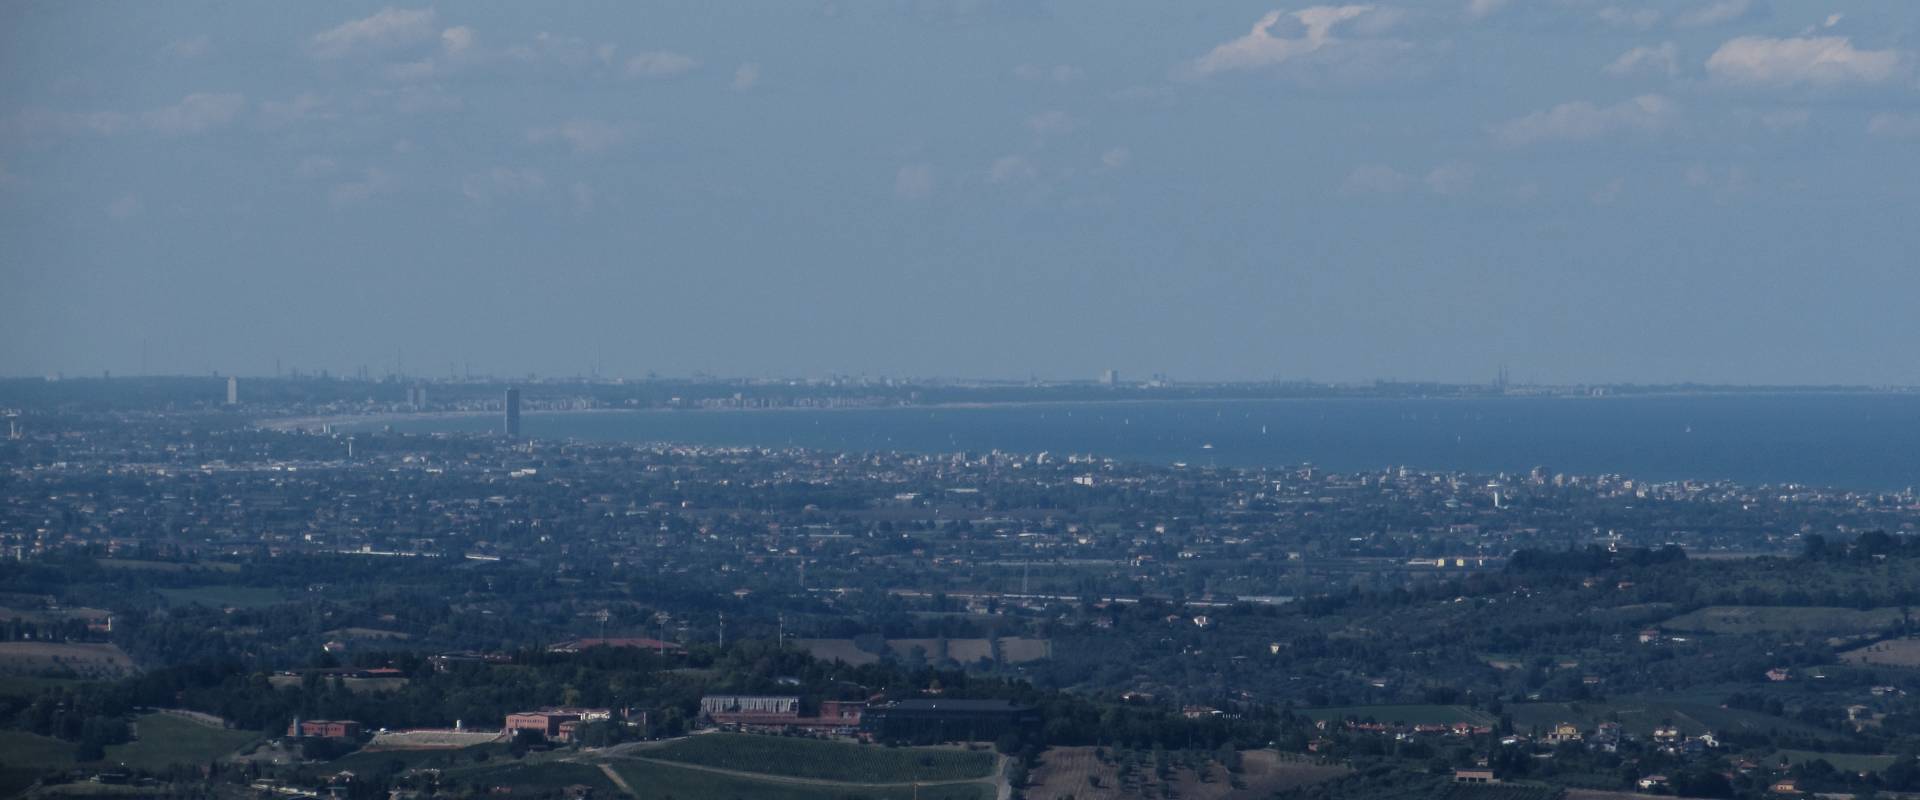 Il Panorama dalla Rocca arriva fino a Ravenna foto di Larabraga19